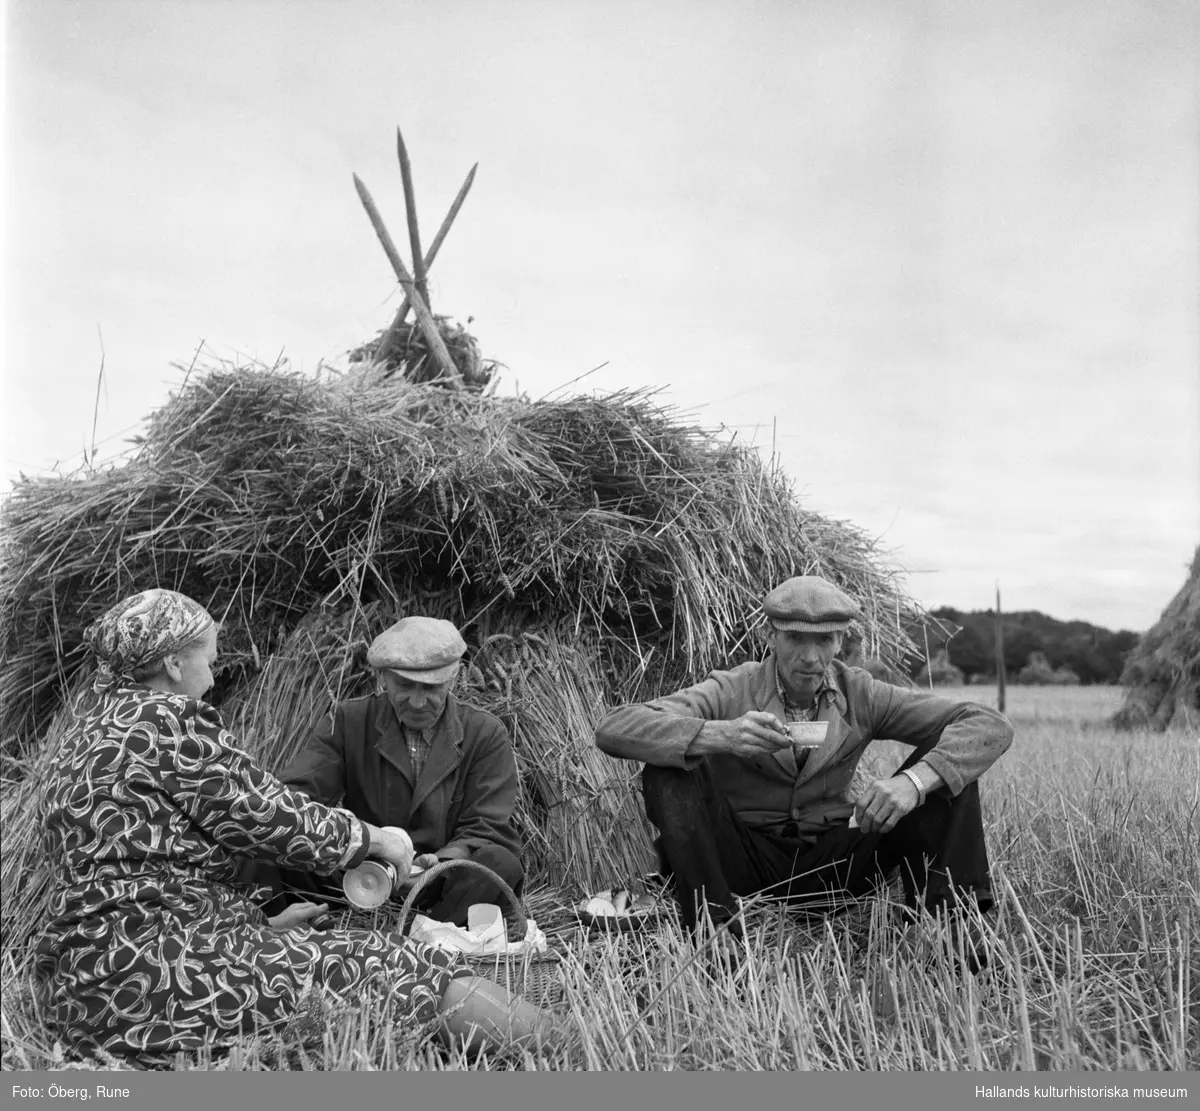 Trekaffe. Kafferast under skördearbete vid Ölmevalla kyrka. 
Bild 1: Gustav Morgan Magnusson, Knut och Maria Öberg med kyrkan i bakgrunden.